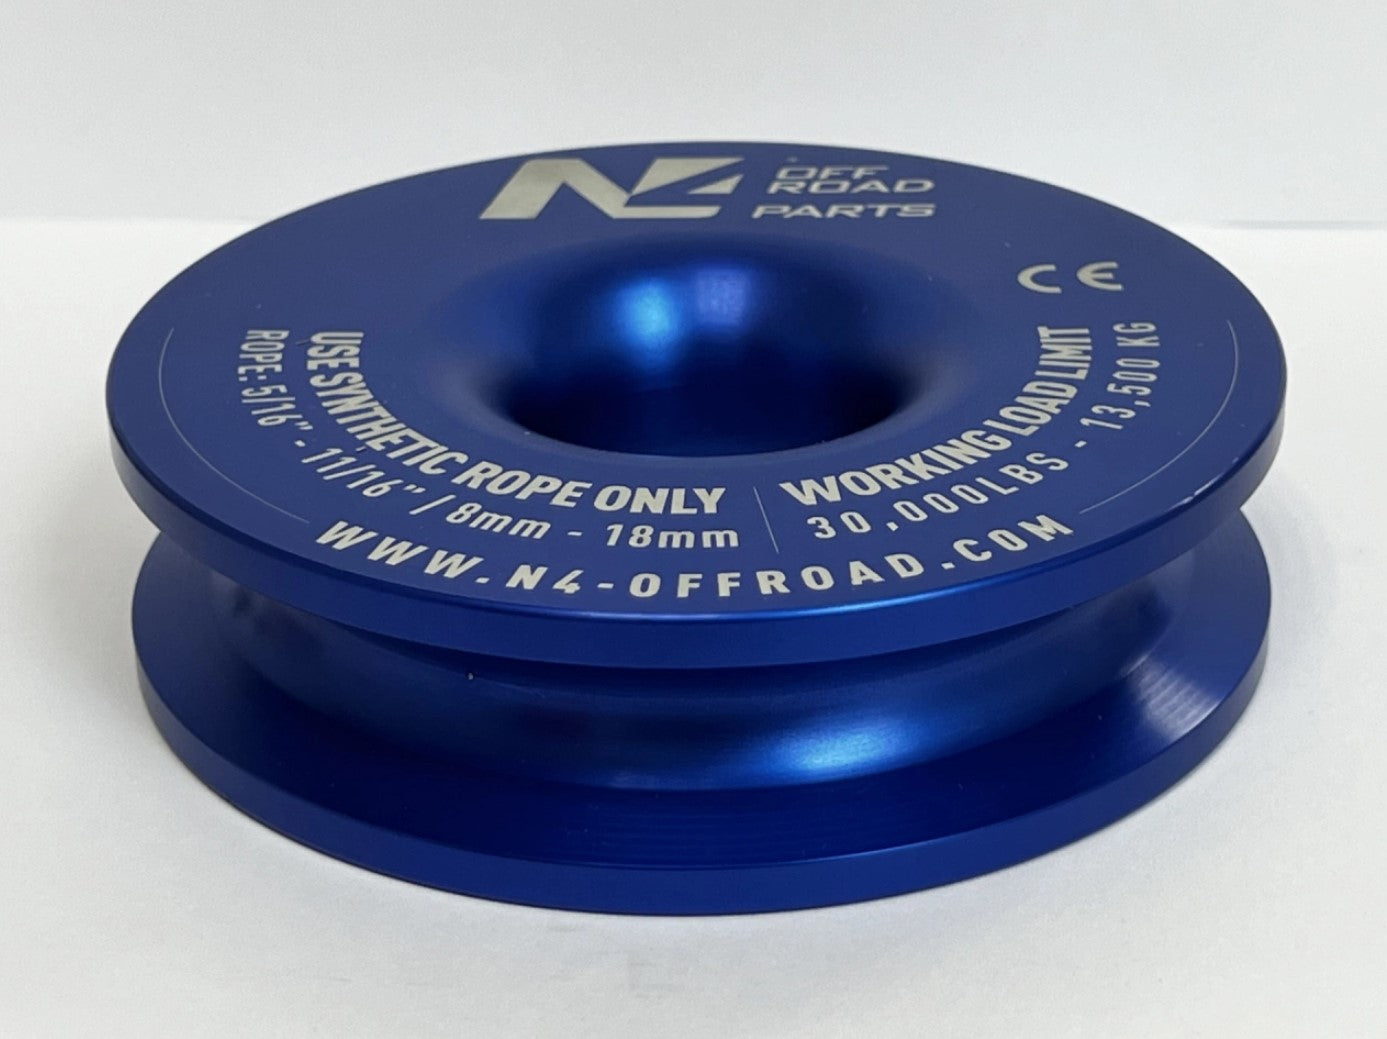 Anilla N4 offroad azul para cuerda de 8 a 18 mm